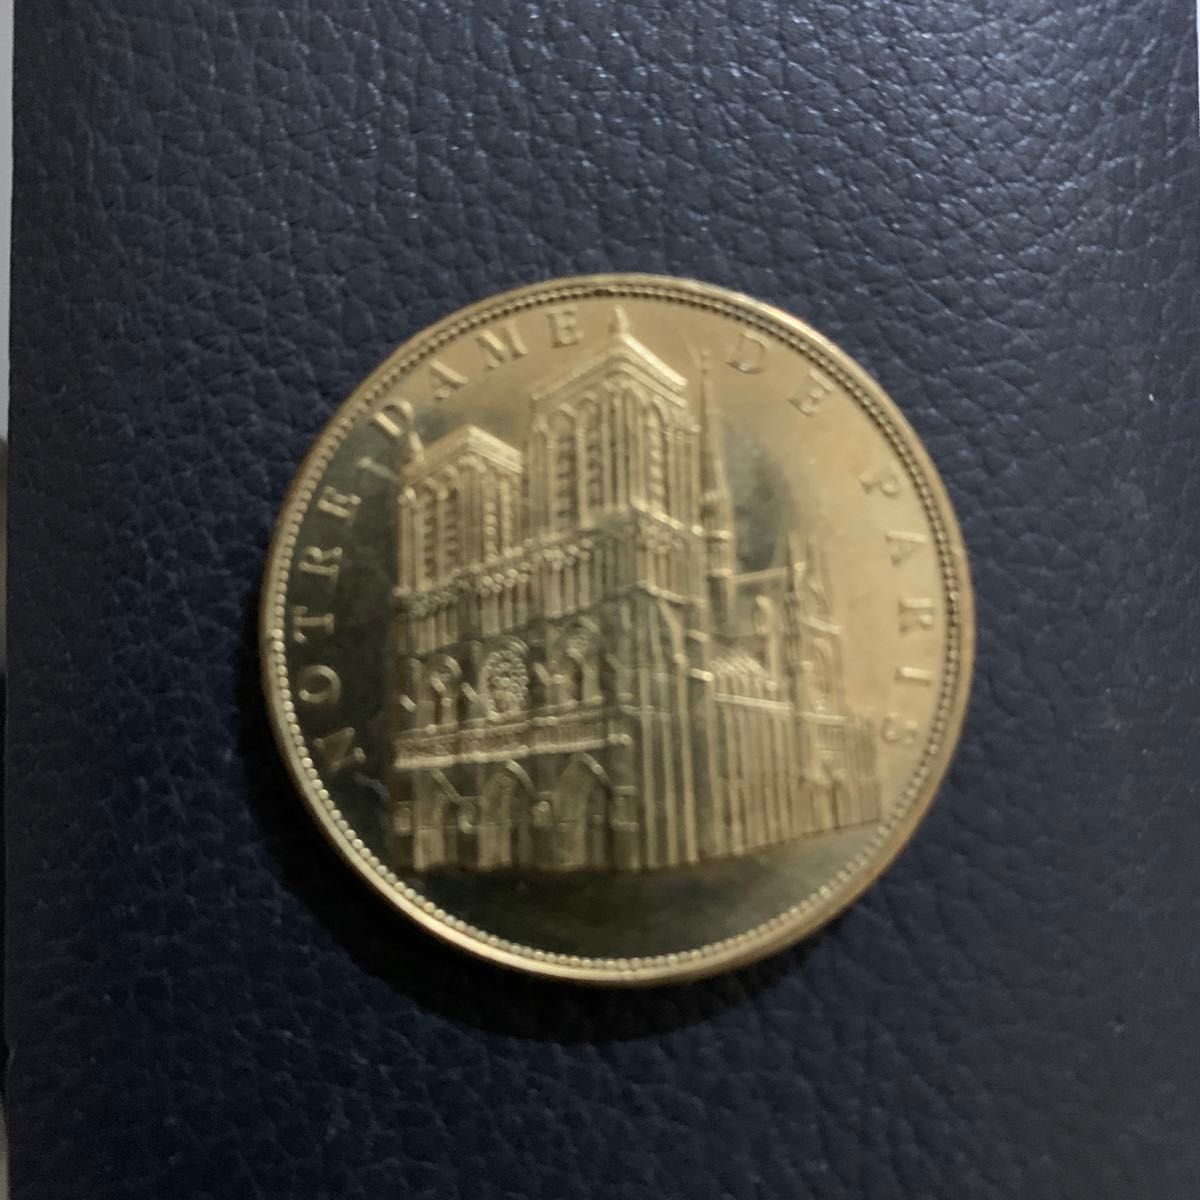 フランス パリ ノートルダム大聖堂 記念 記念品 コイン 2011 中古品 貨幣 硬貨 金貨 ヨーロッパ コレクション 記念硬貨